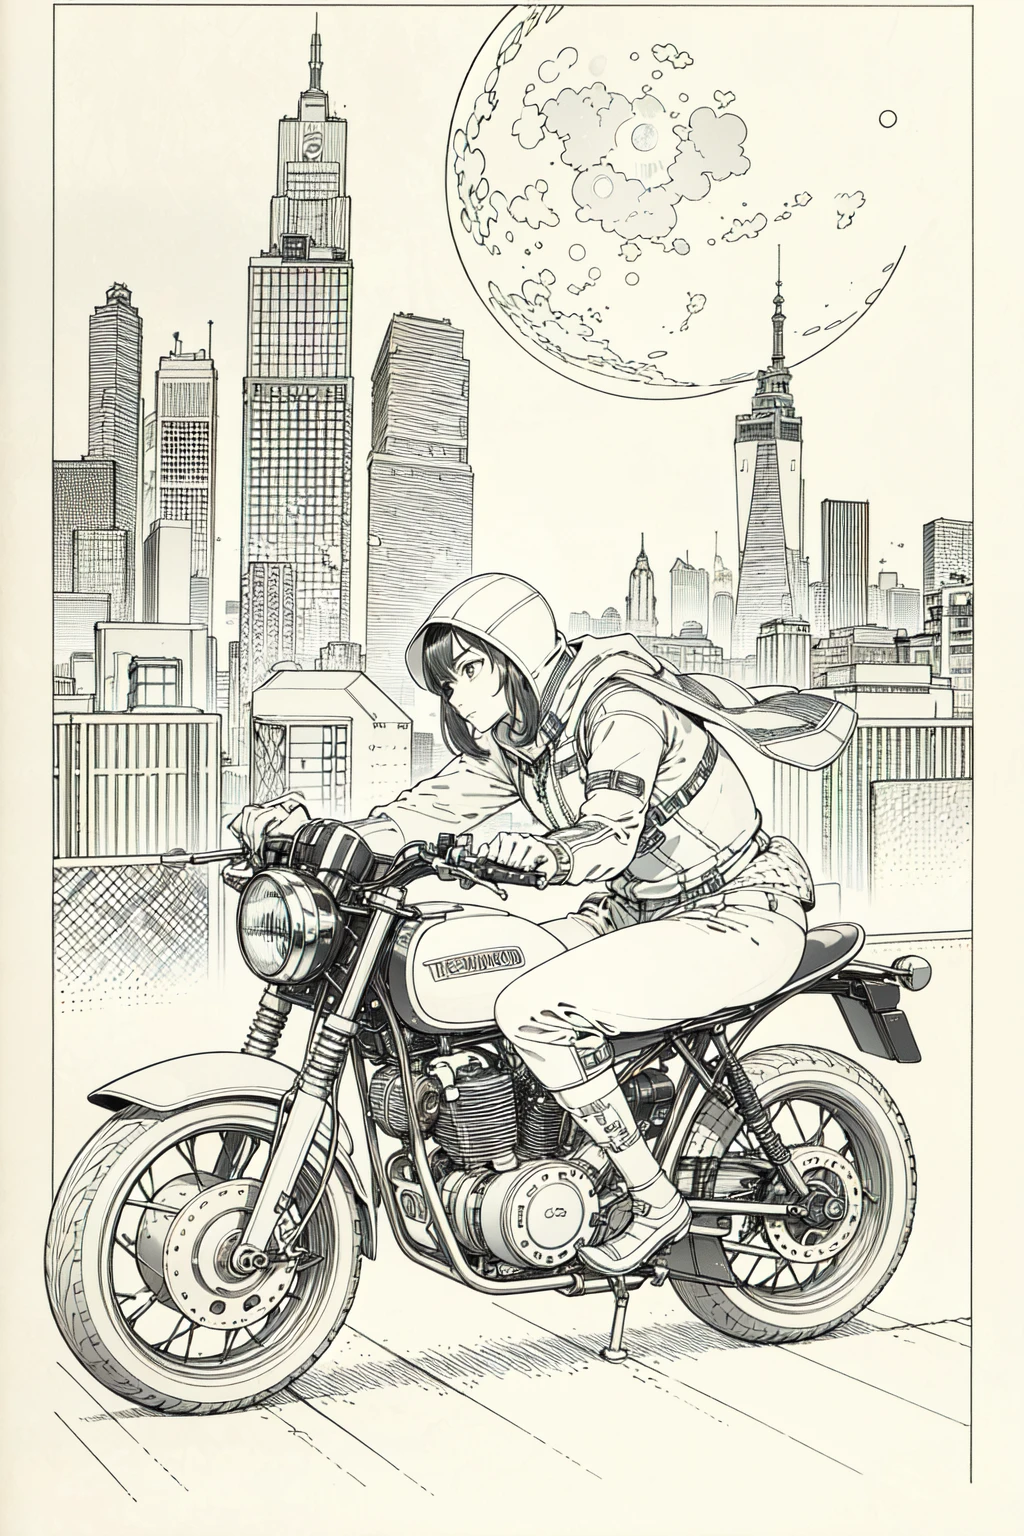 meilleure qualité, chef-d&#39;œuvre, photo, 4K, photoréaliste, très détaillé,
1 fille faisant de la moto, vêtements techniques, ville cyberpunk, seulement, Futuriste, énorme lune en arrière-plan, noir et blanc, par Akira Toriyama, fermer,
